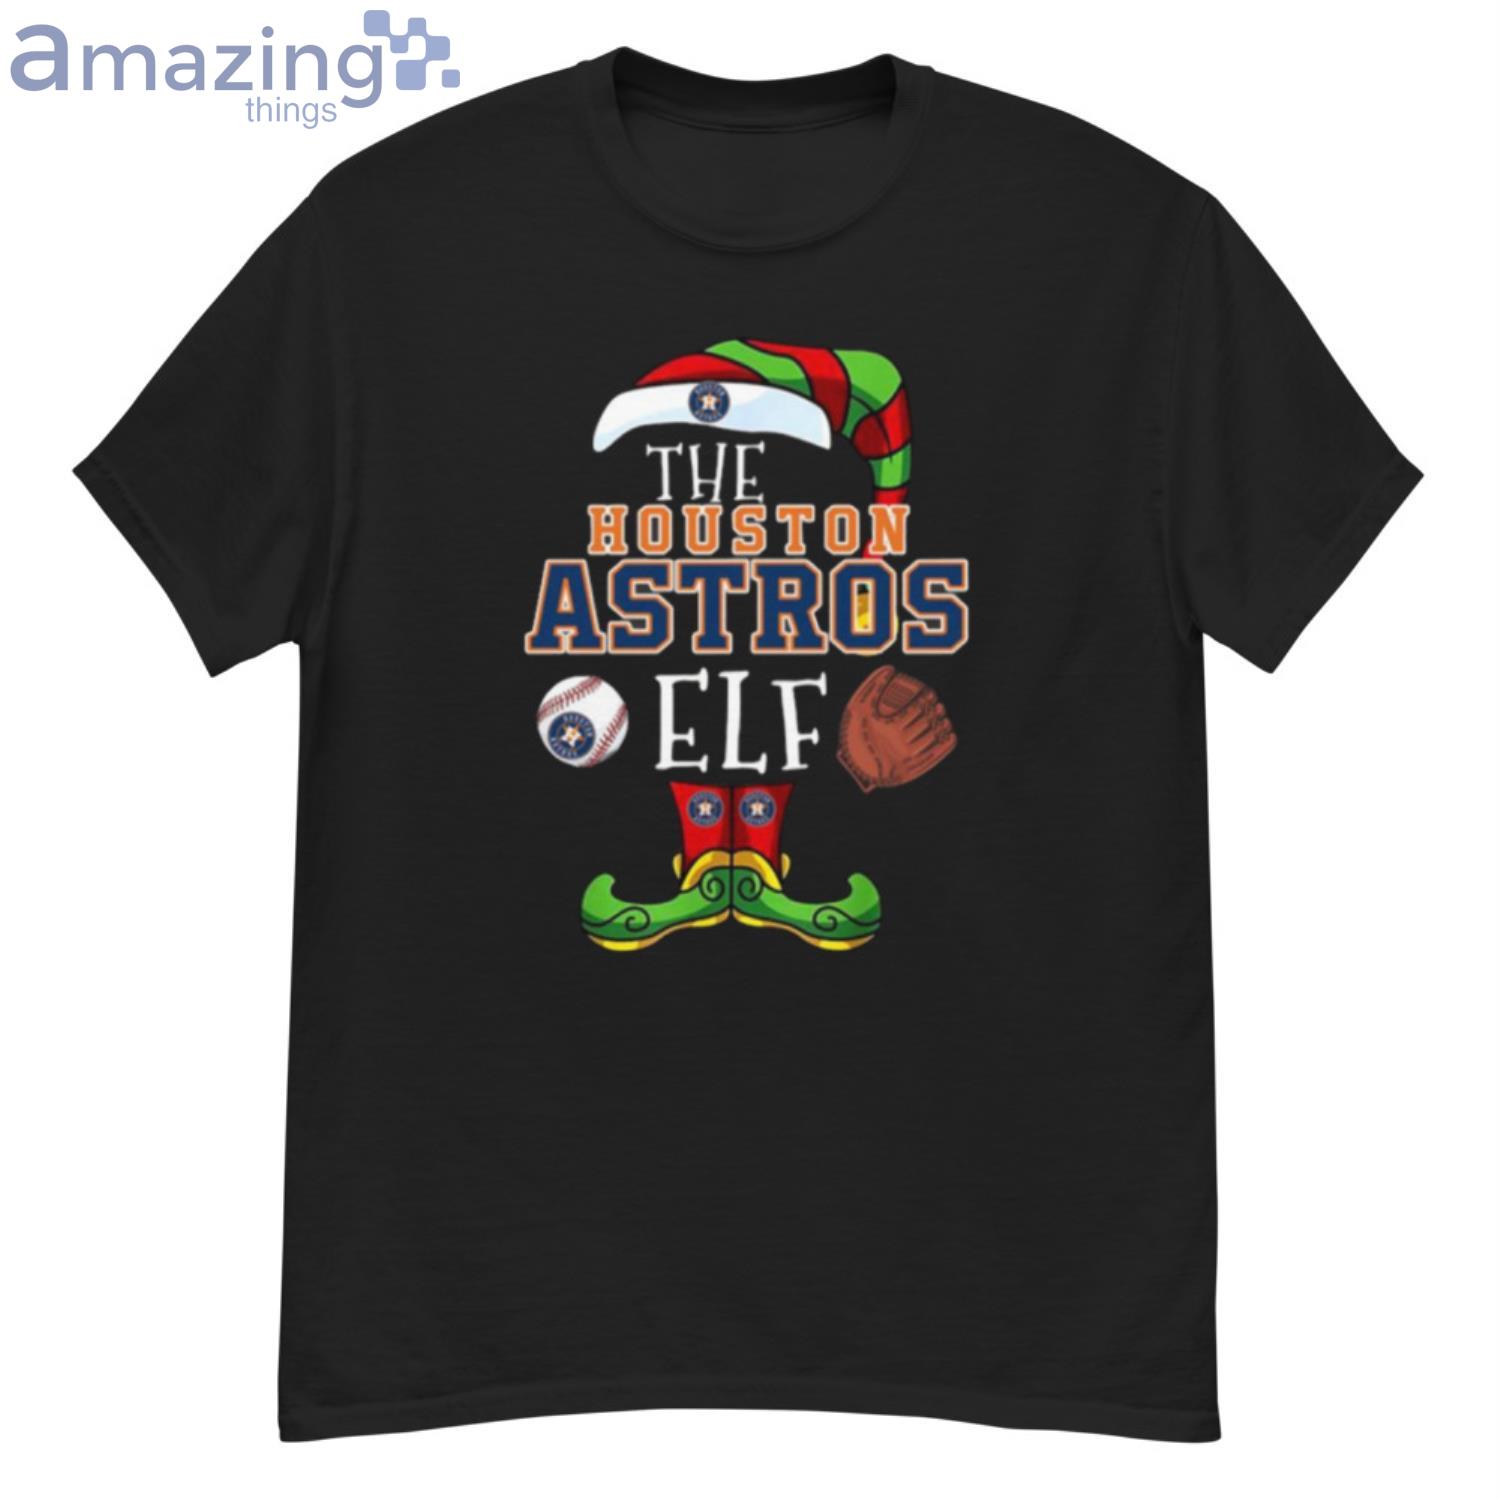 Boston Red Sox Christmas ELF Funny MLB T-Shirt